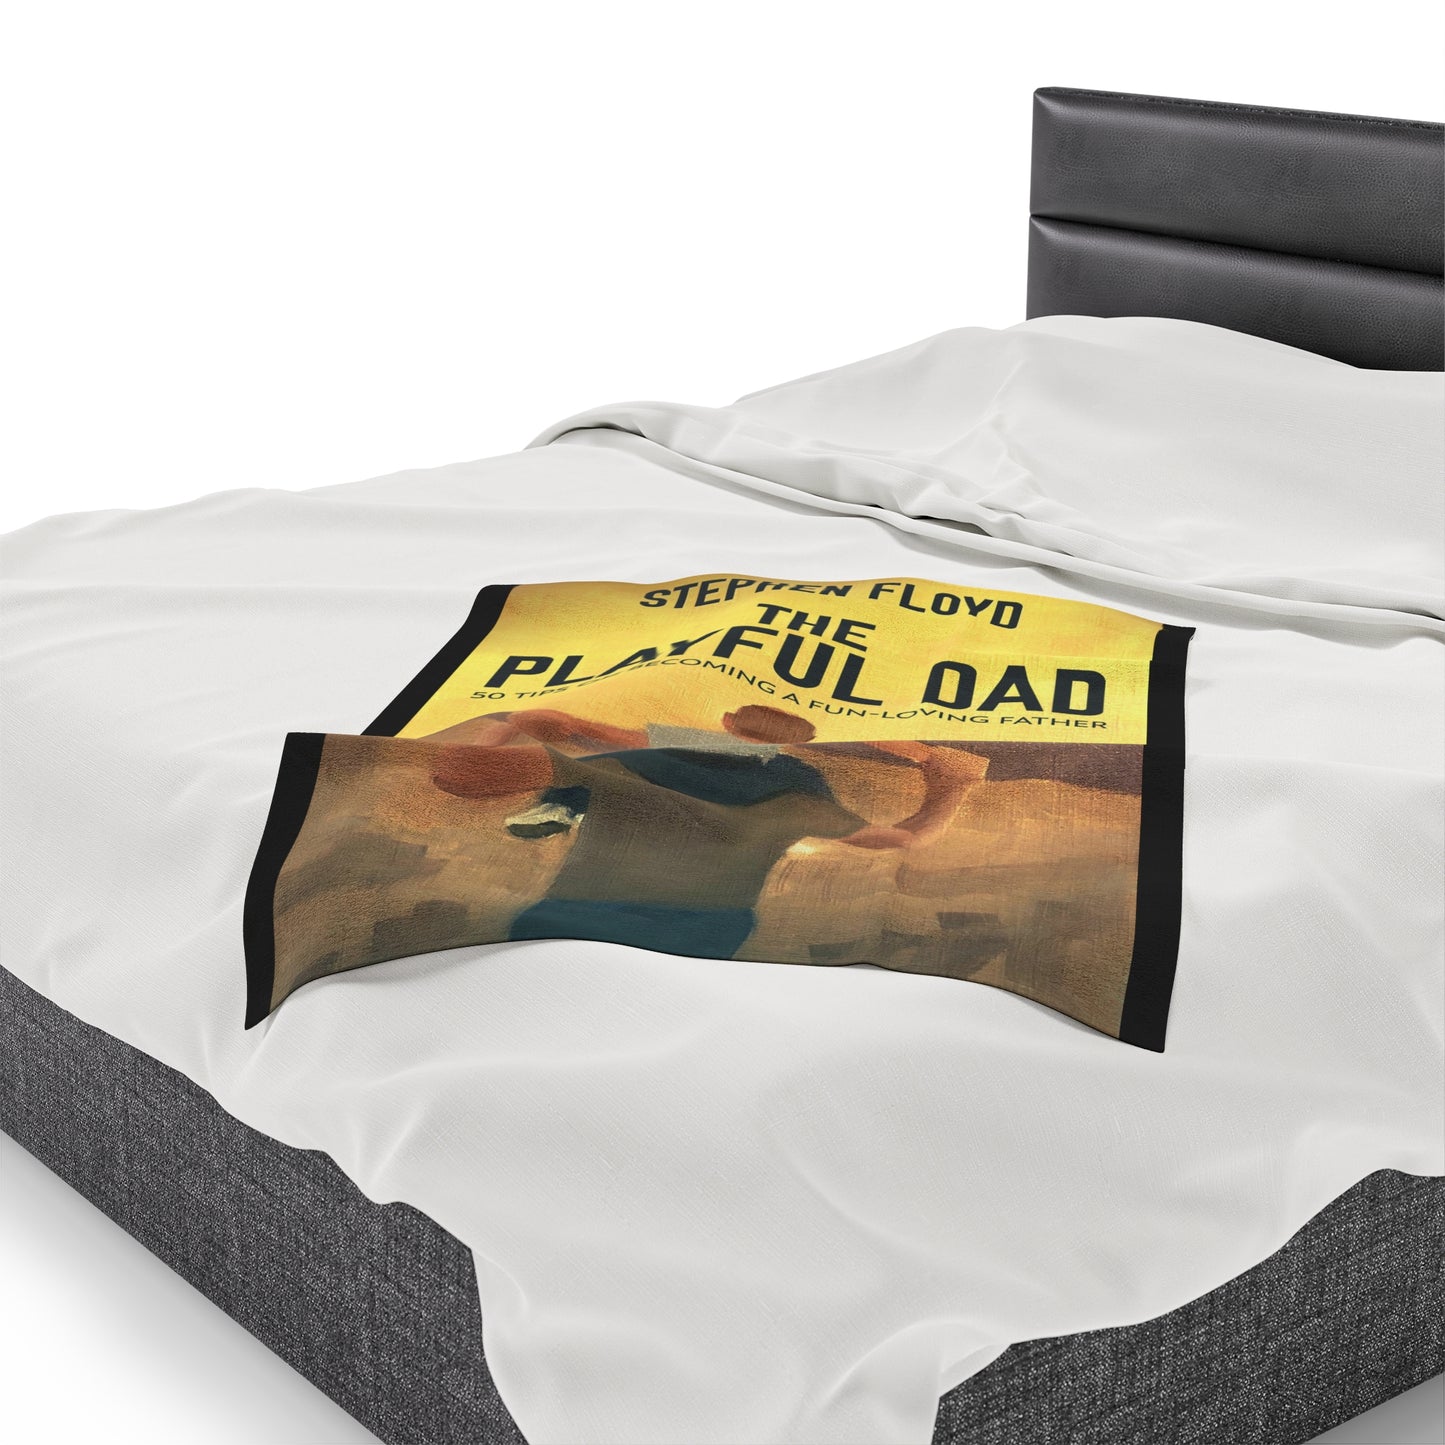 The Playful Dad - Velveteen Plush Blanket